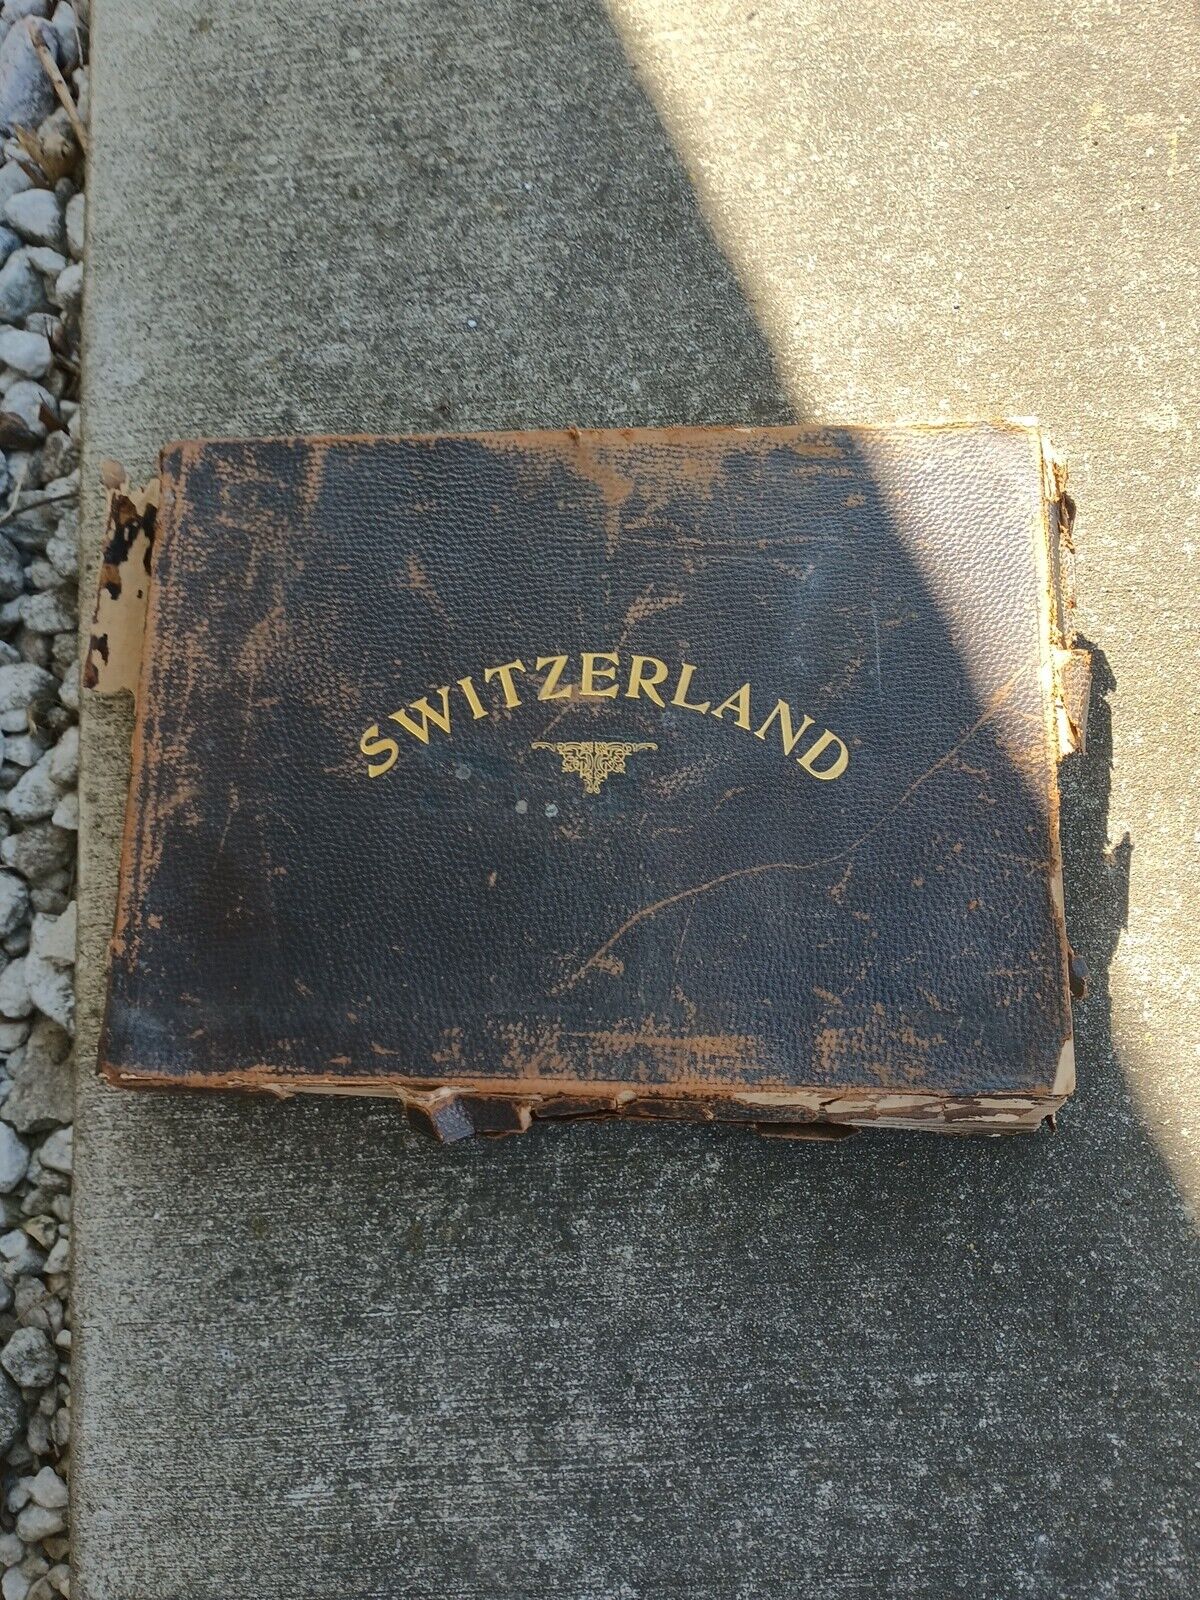 Very Rare 1800s antique PHOTO ALBUM Of switzerland  Large